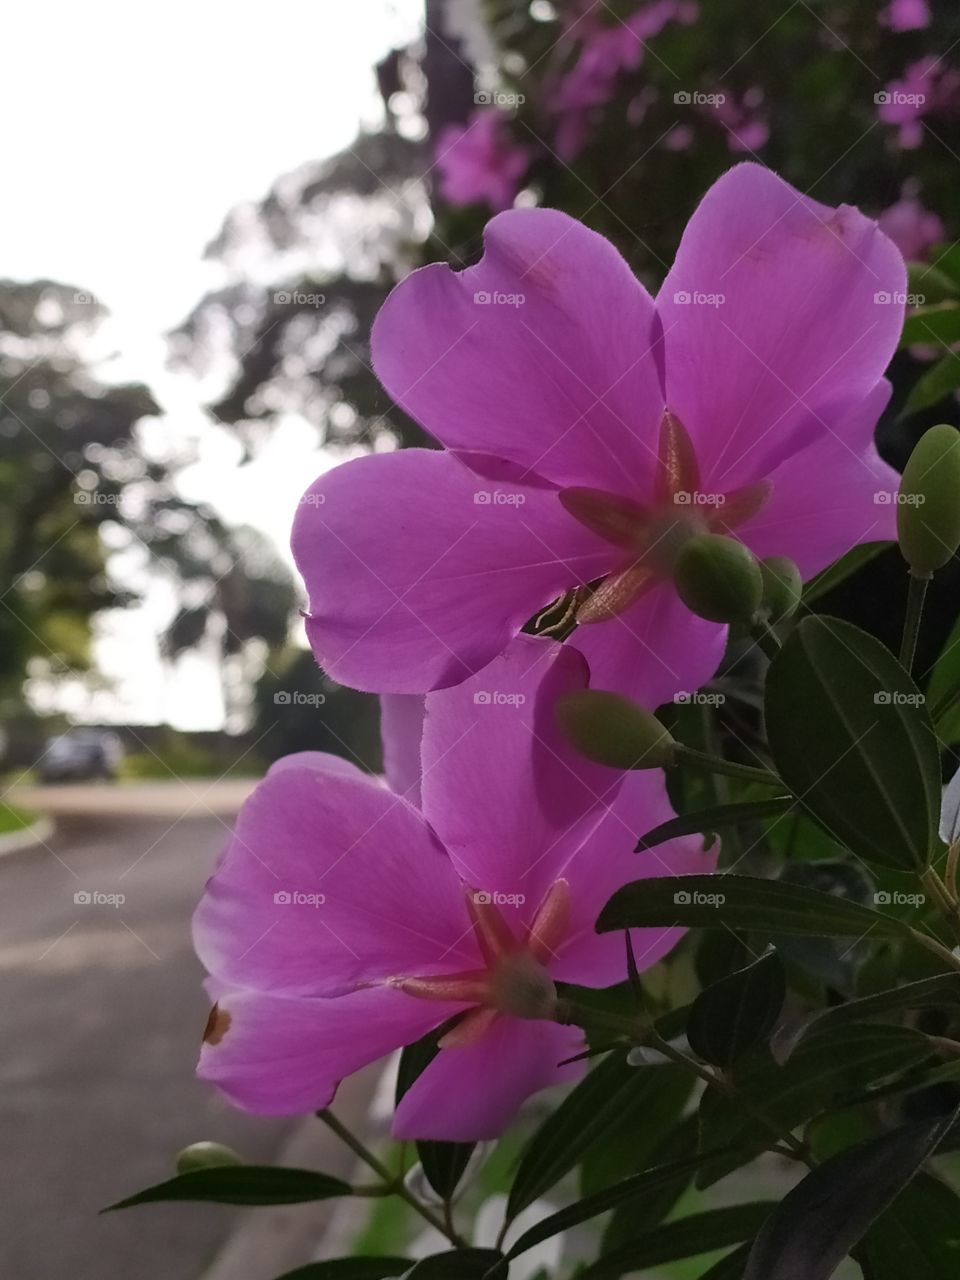 a pink flower called "manacá flower" in the garden